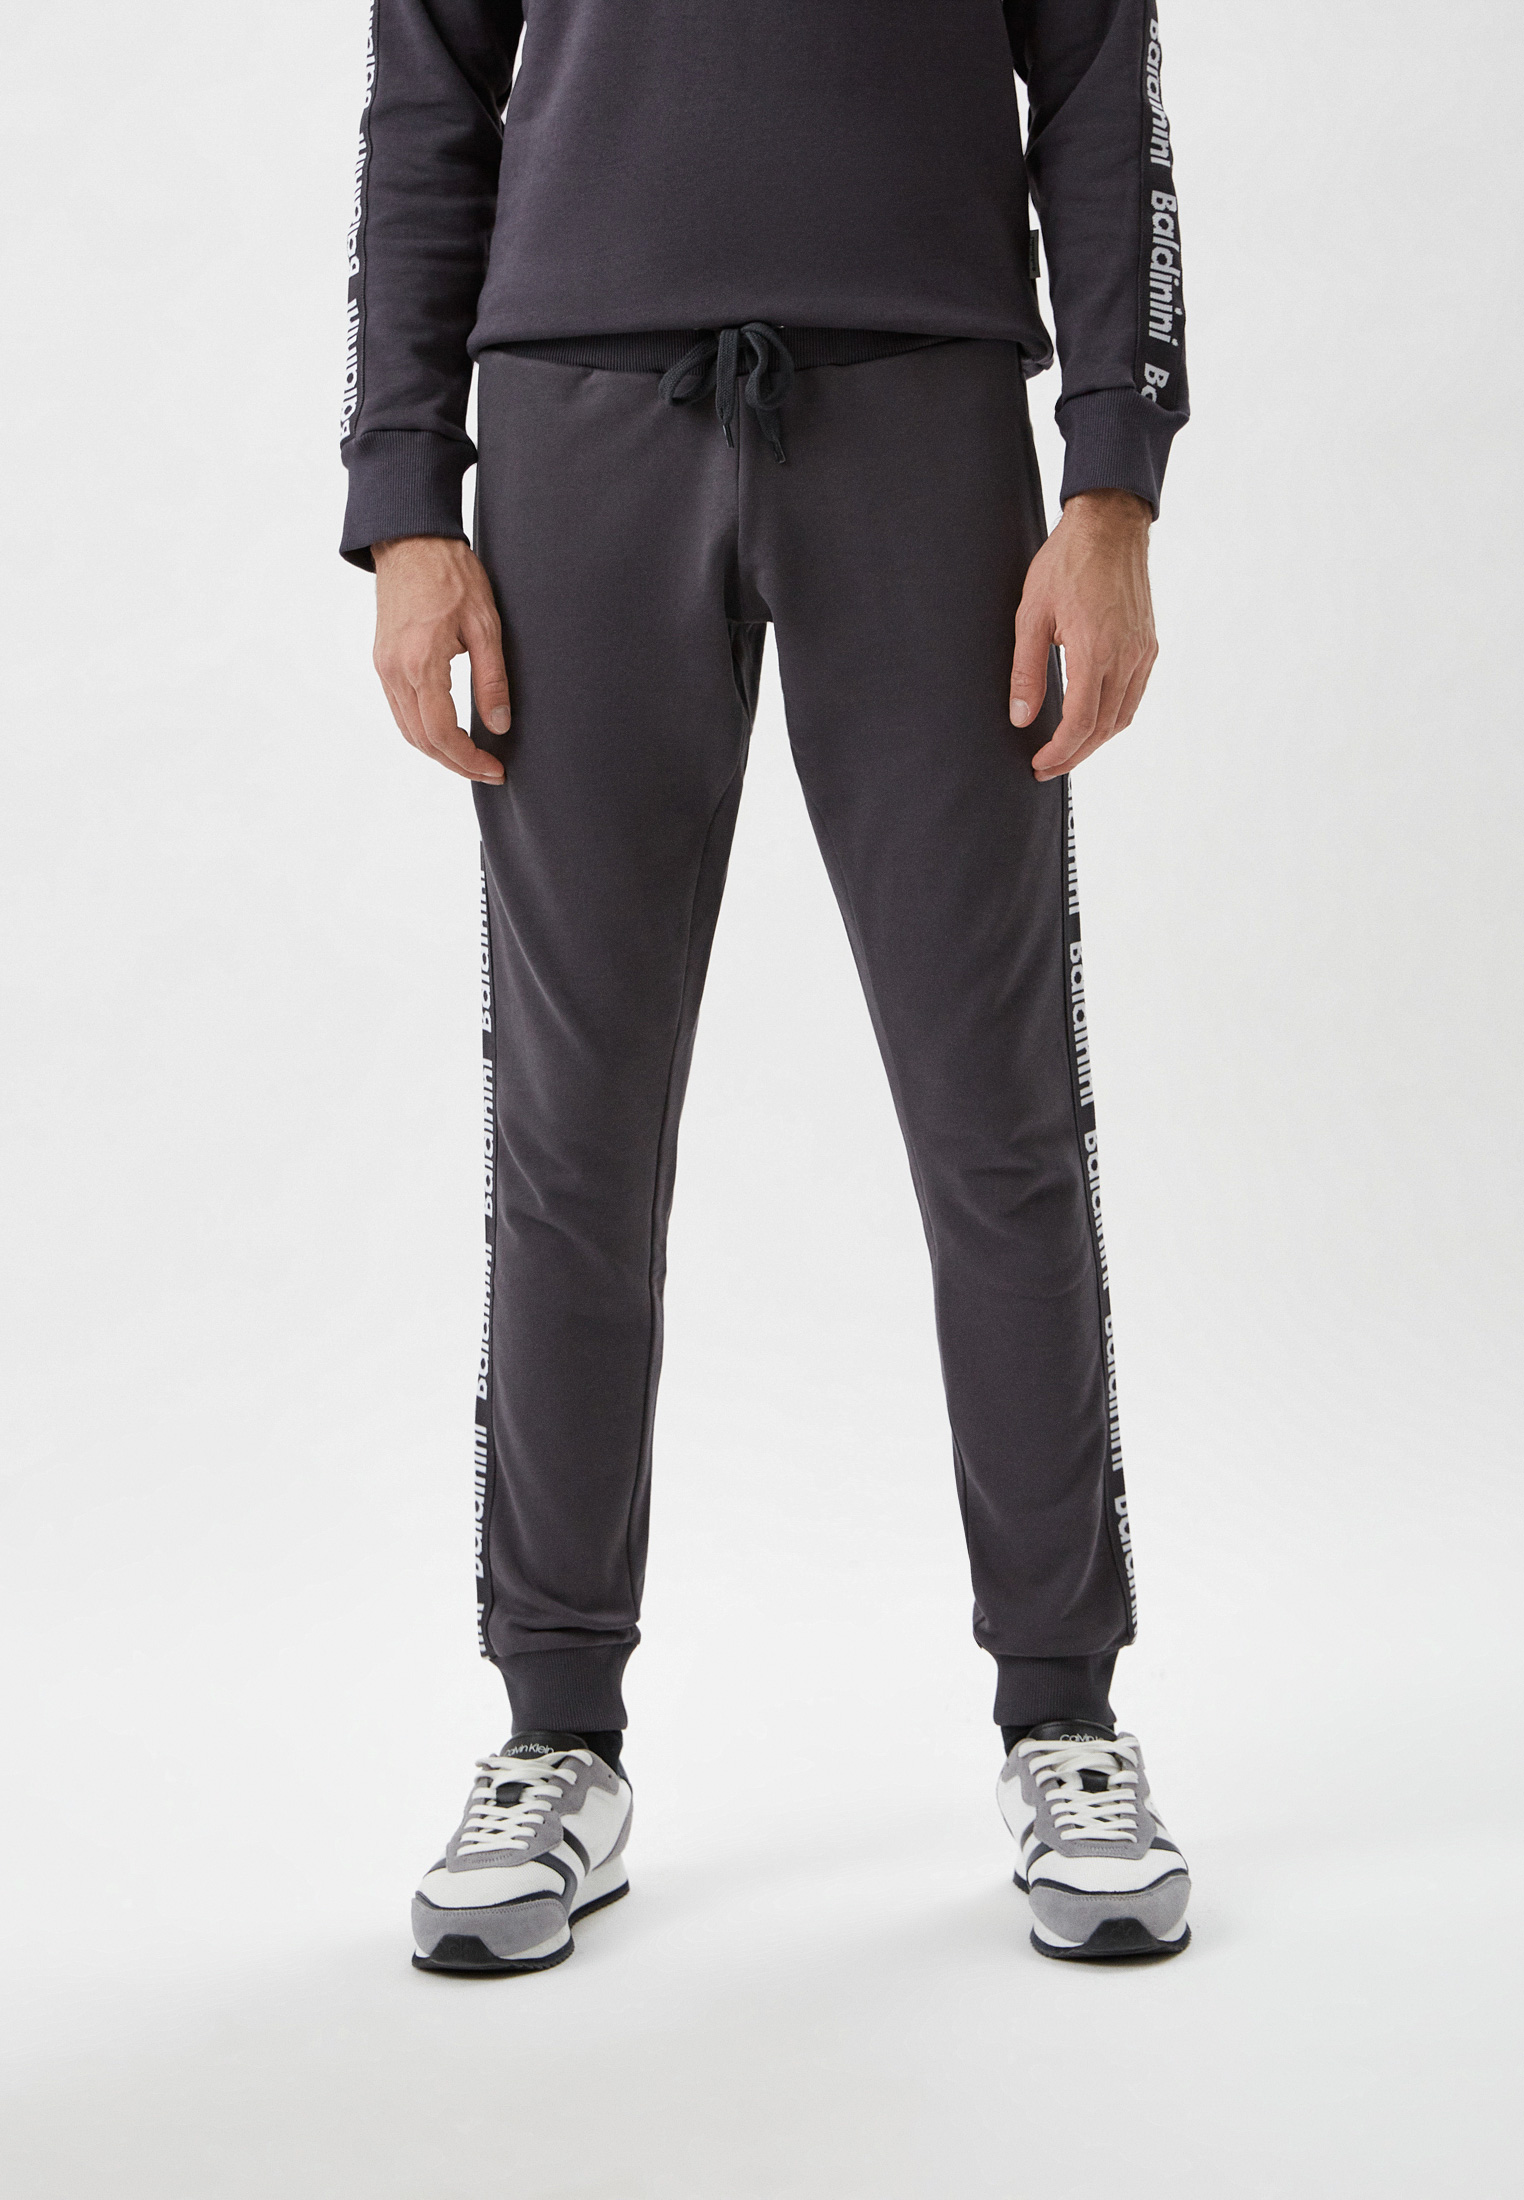 Мужские спортивные брюки Baldinini (Балдинини) M13: изображение 1